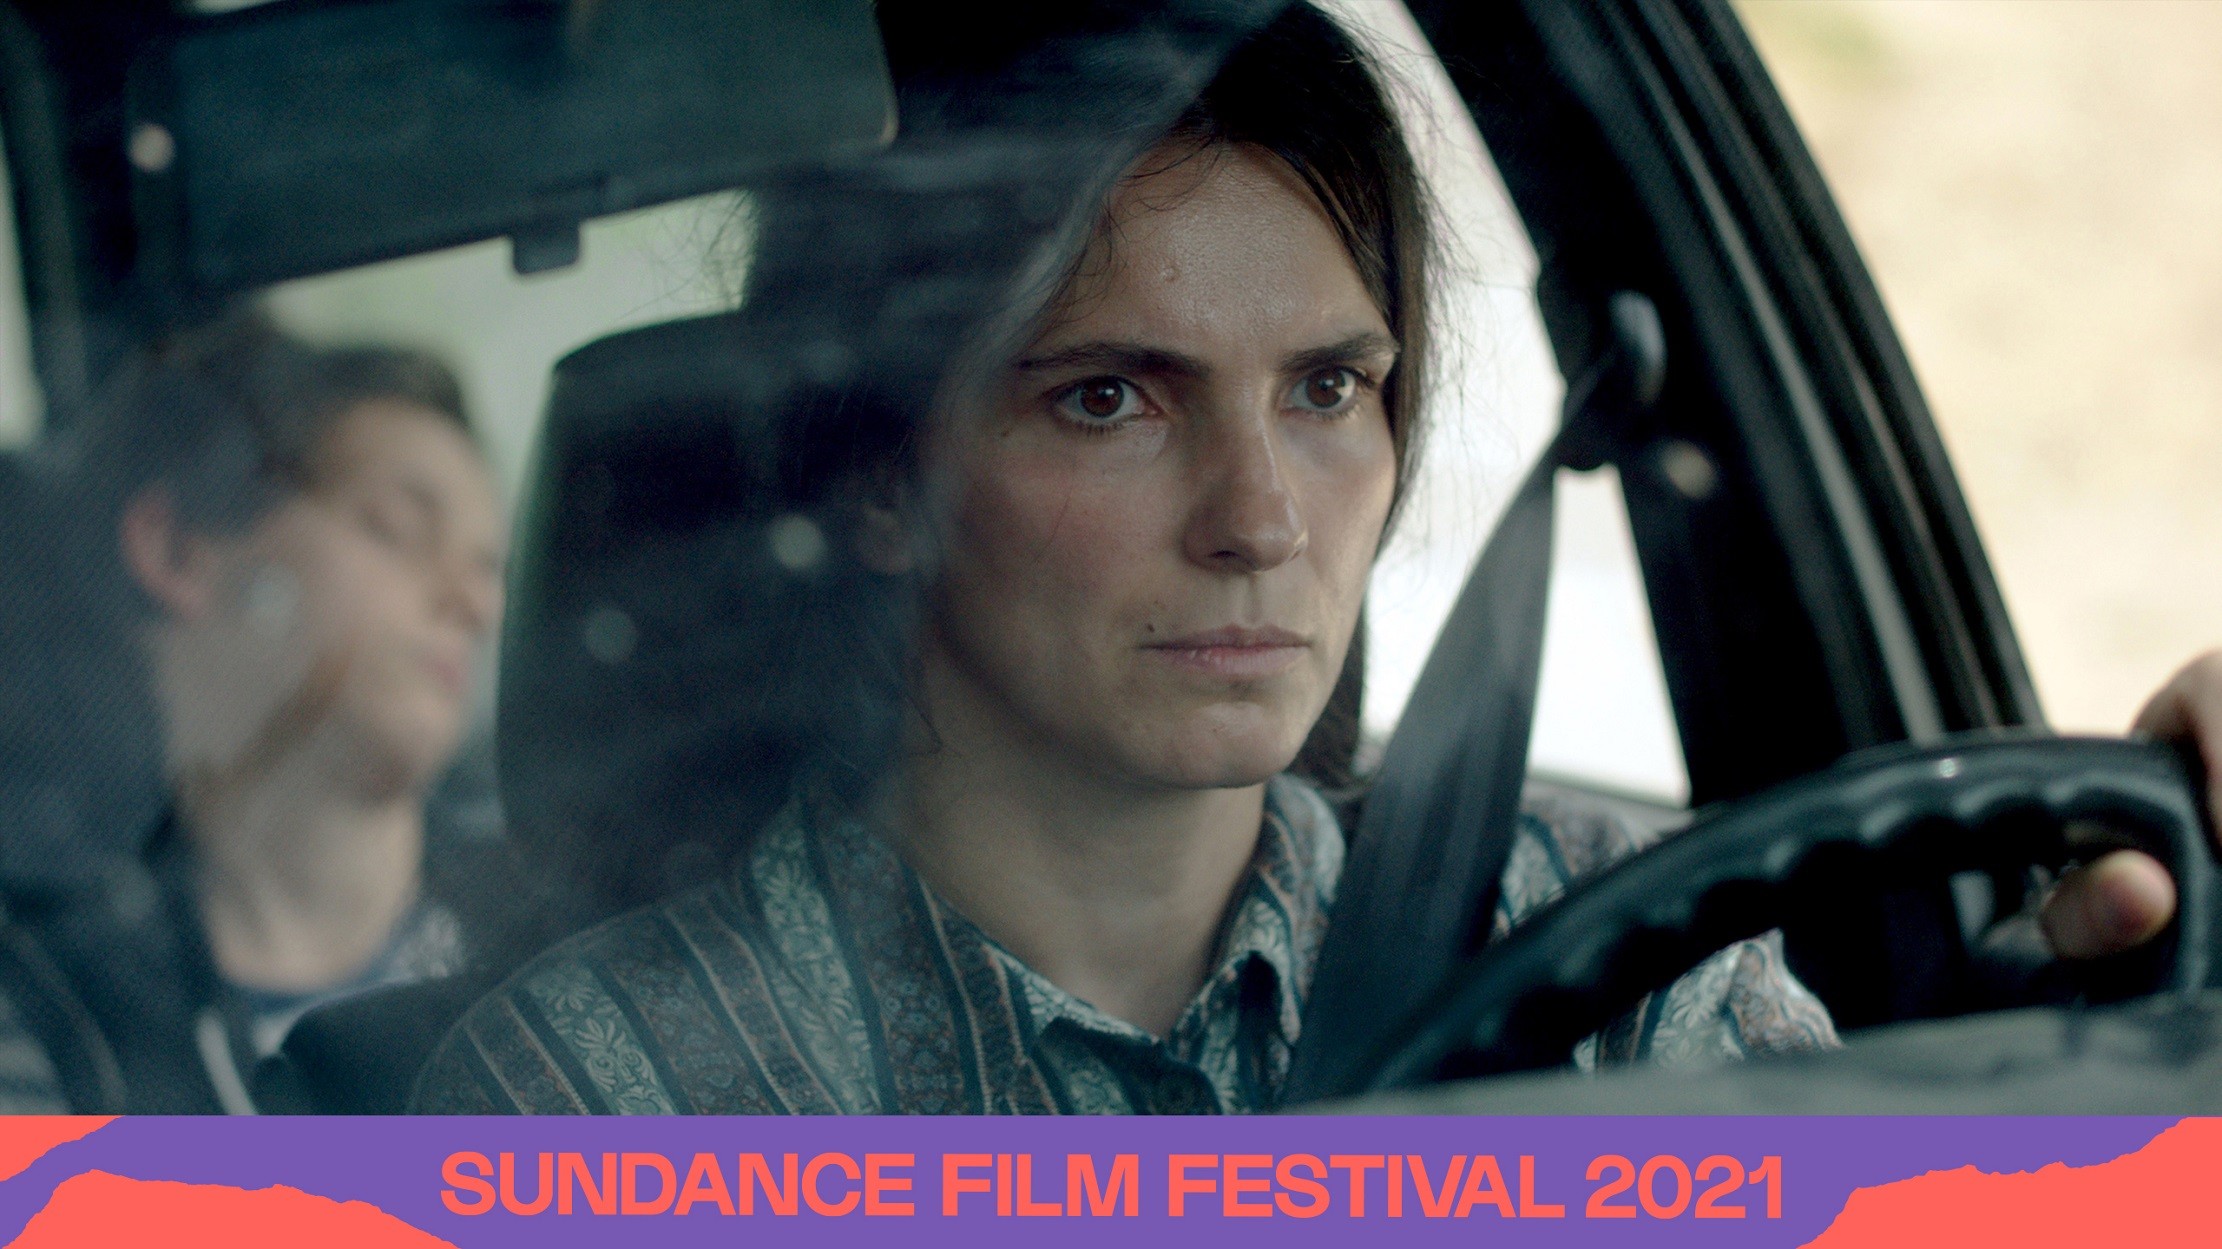 w 41 - ''Zgjoi'' i Blerta Bashollit në konkurencë kryesore në Sundance Film Festival